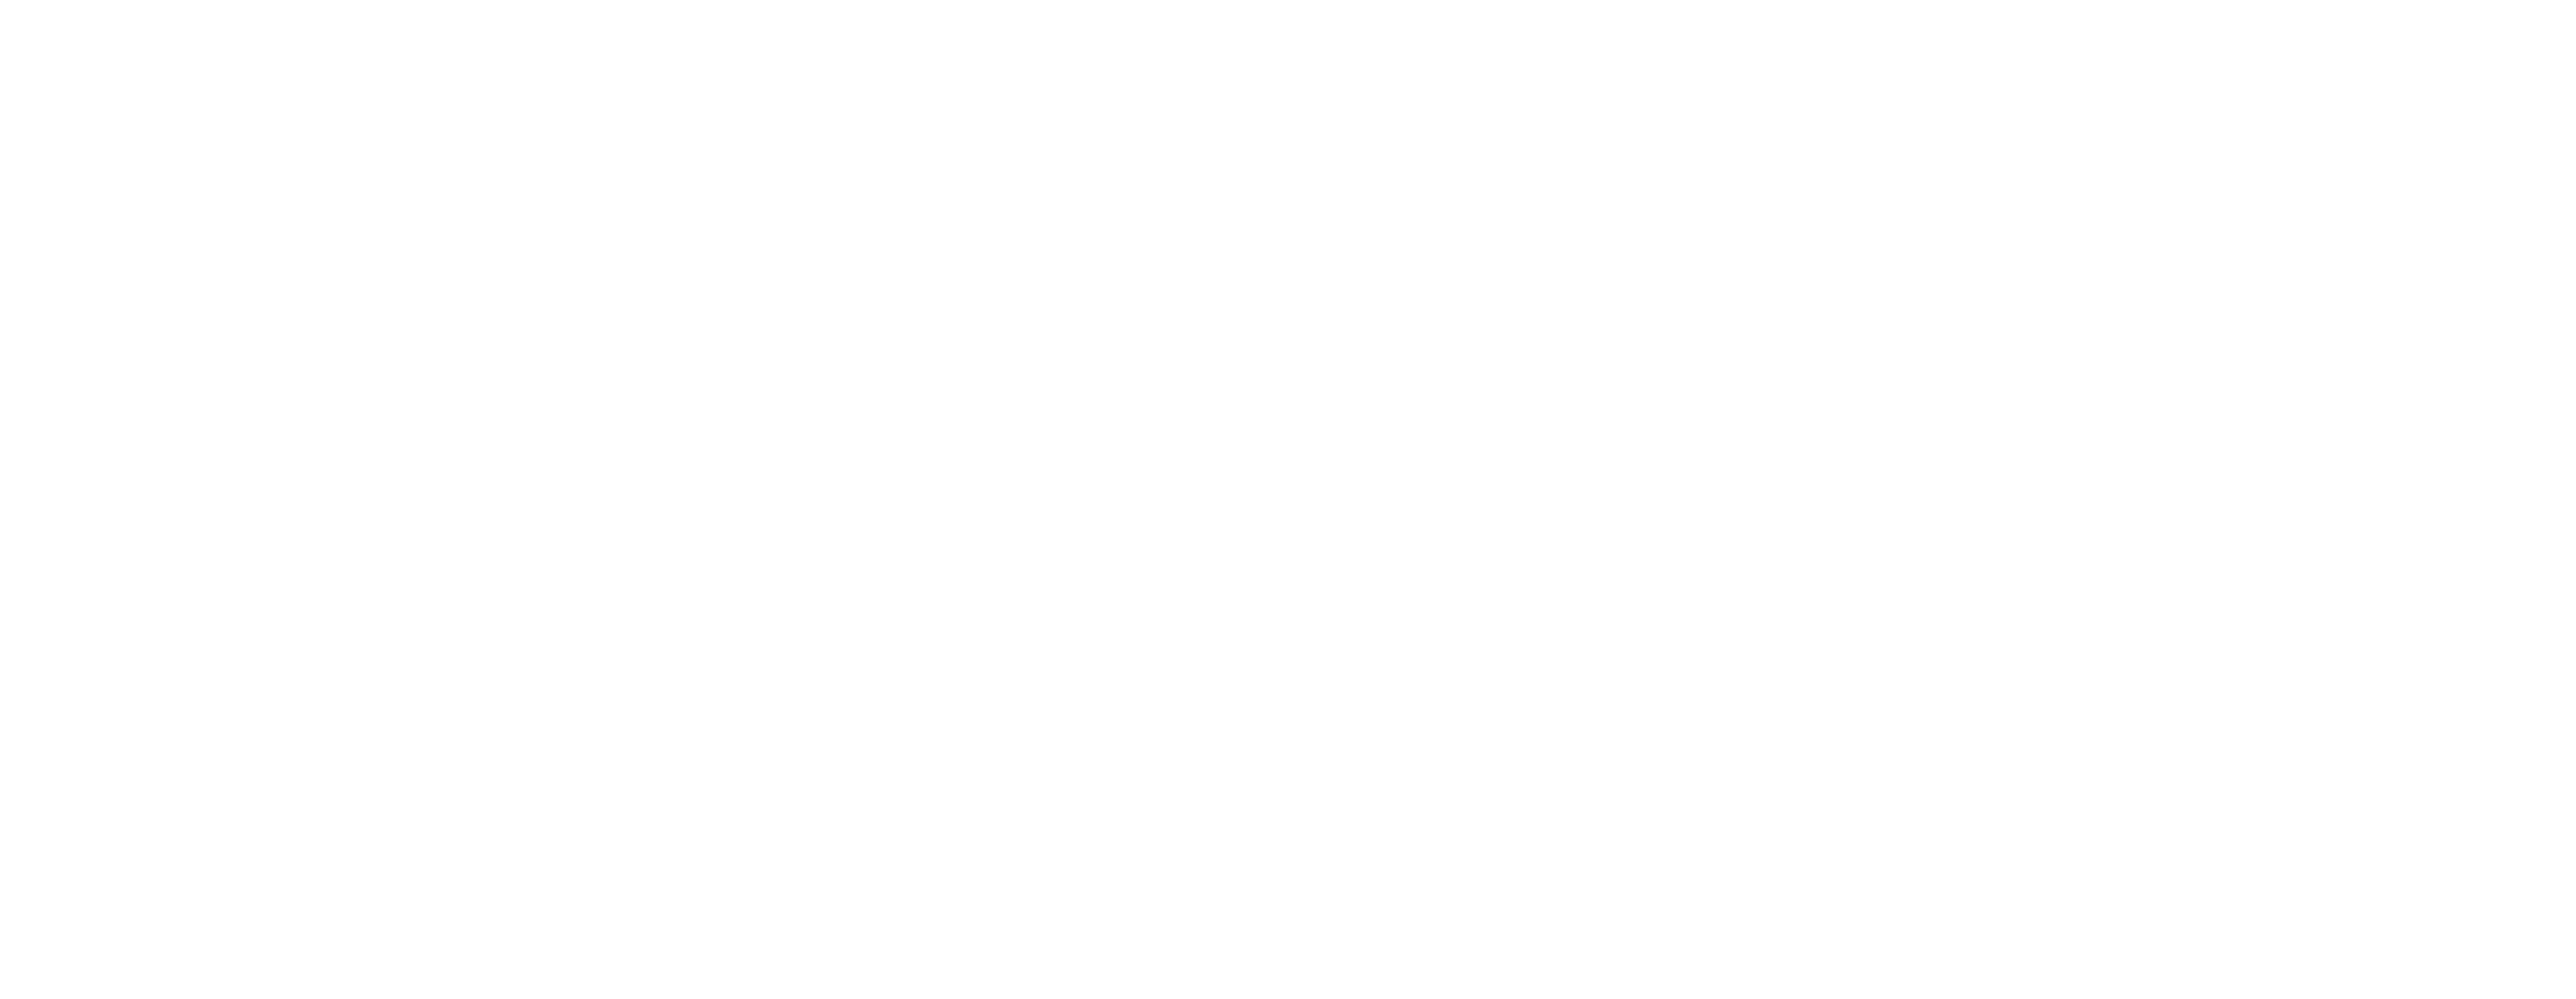 Double Walker logo